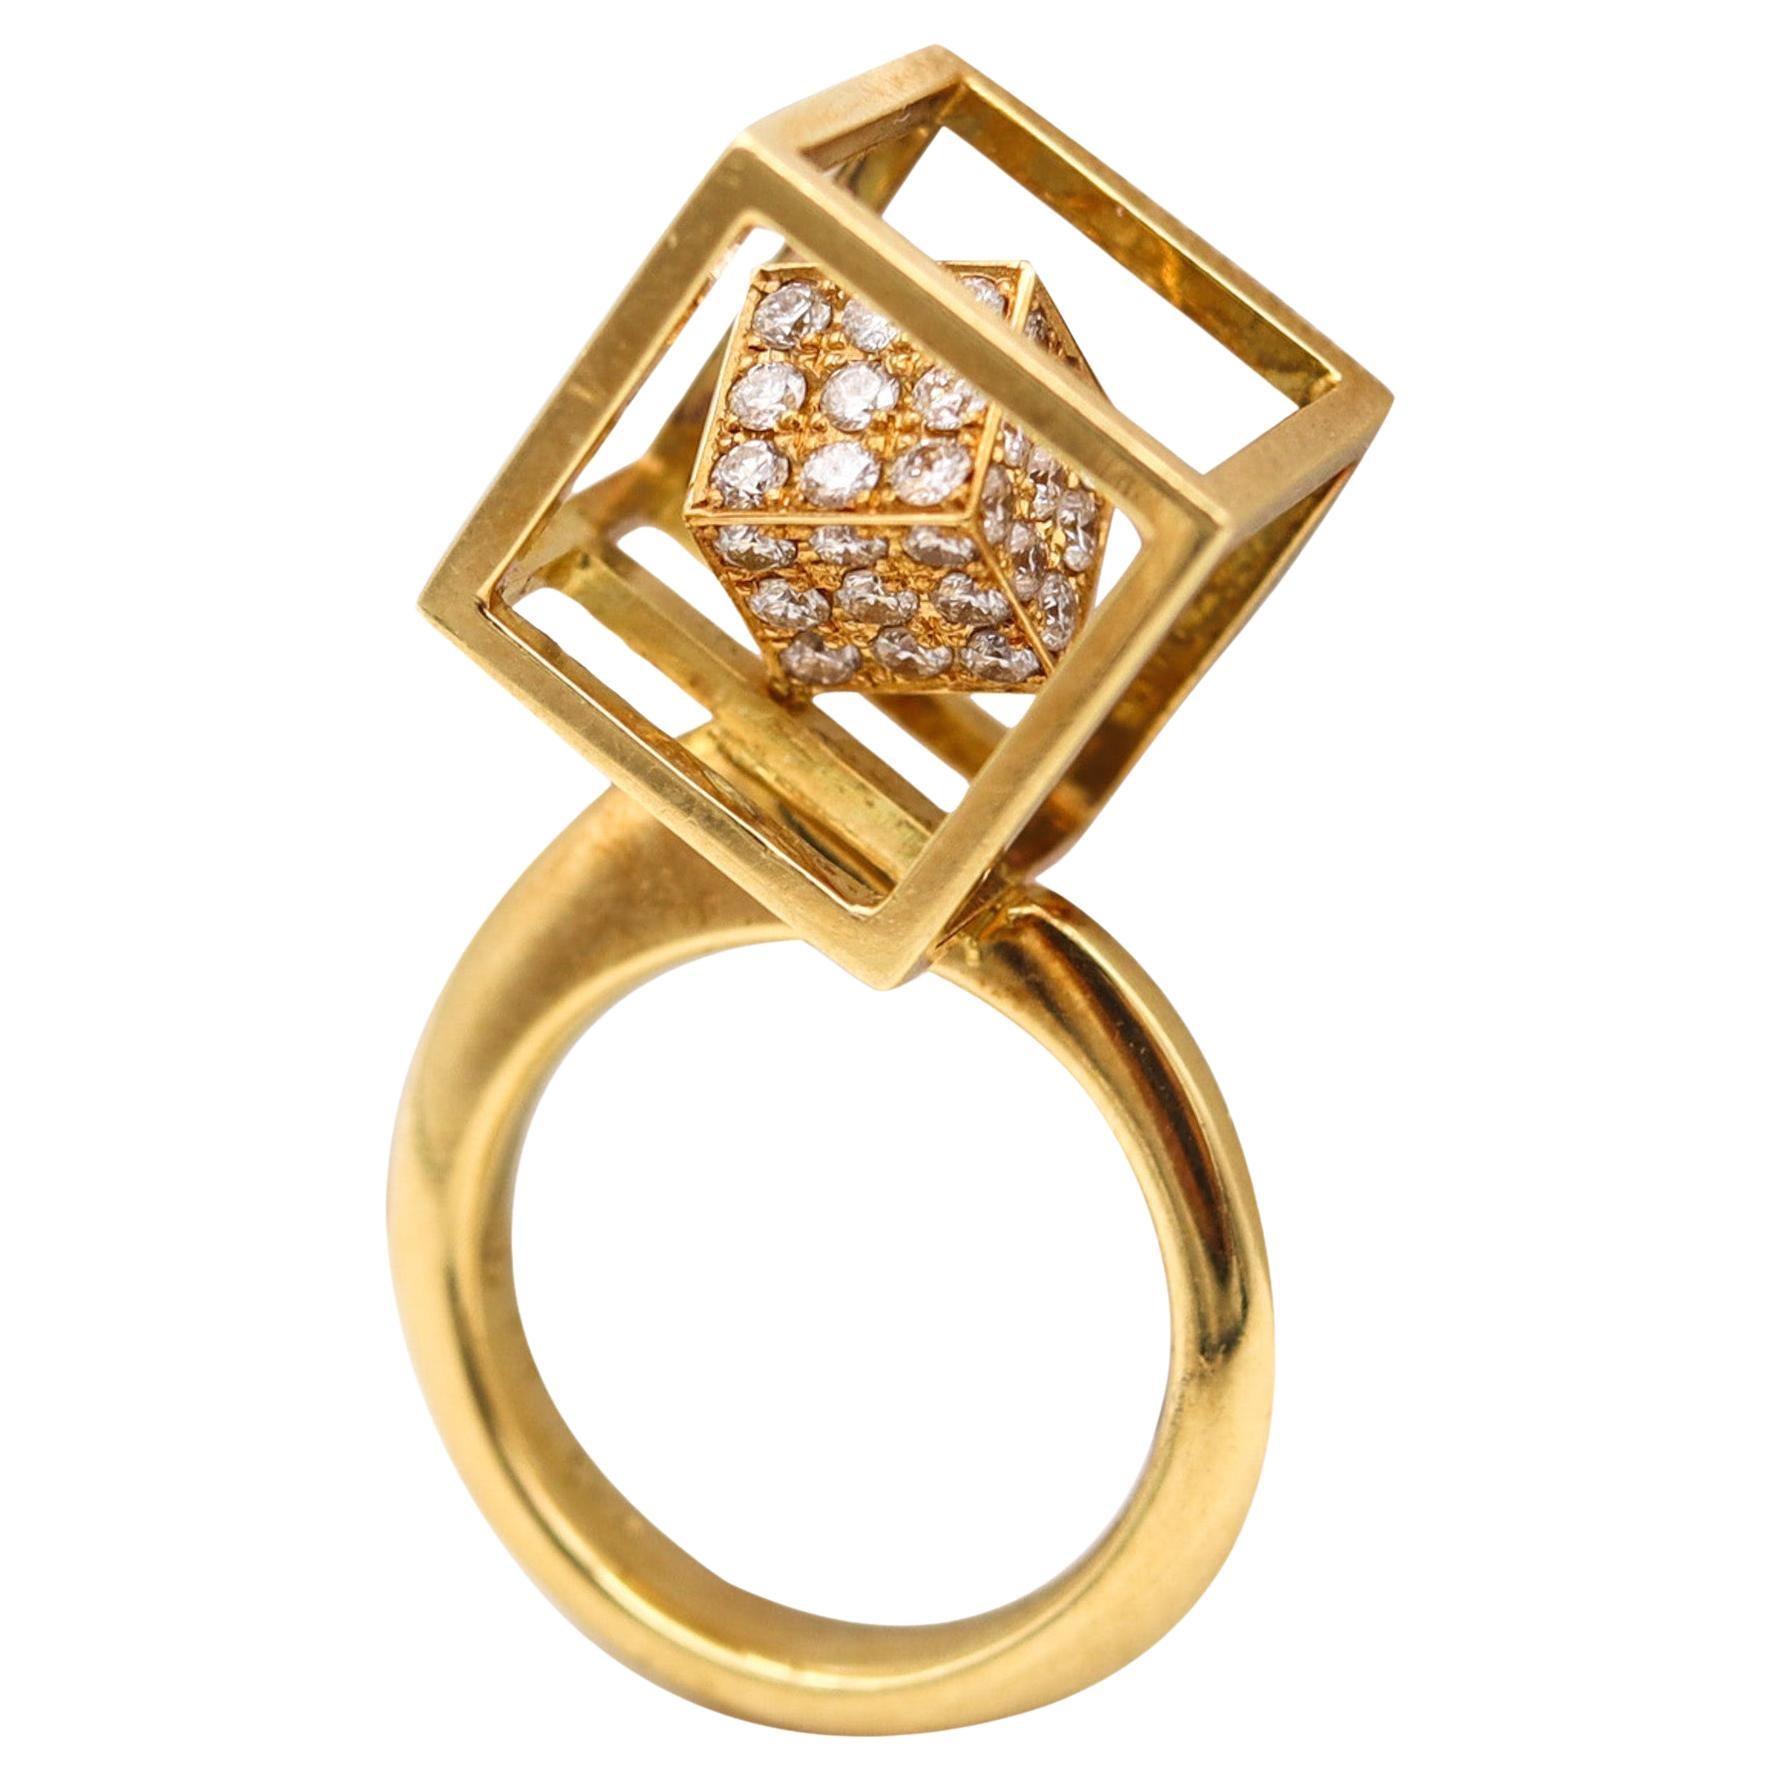 Bague Op Art moderniste en or jaune 18 carats avec 1,20 carat de diamants